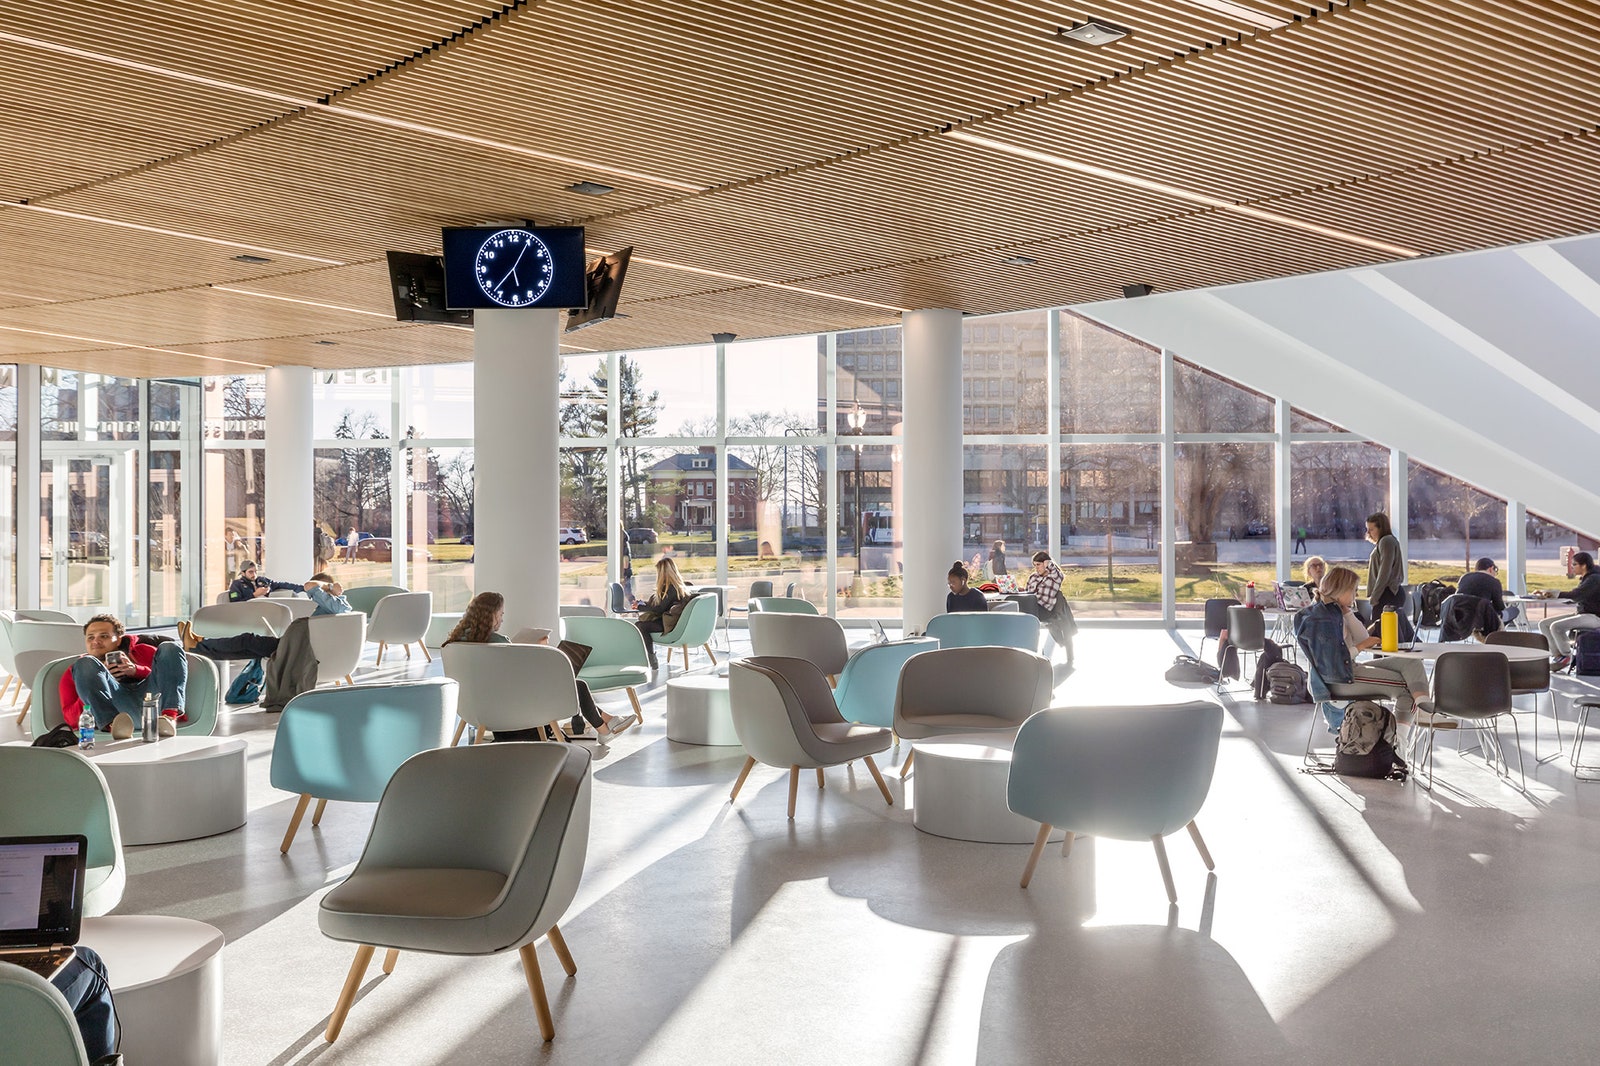 Архитектурный проект нового здания бизнесшколы в Университете Массачусетса